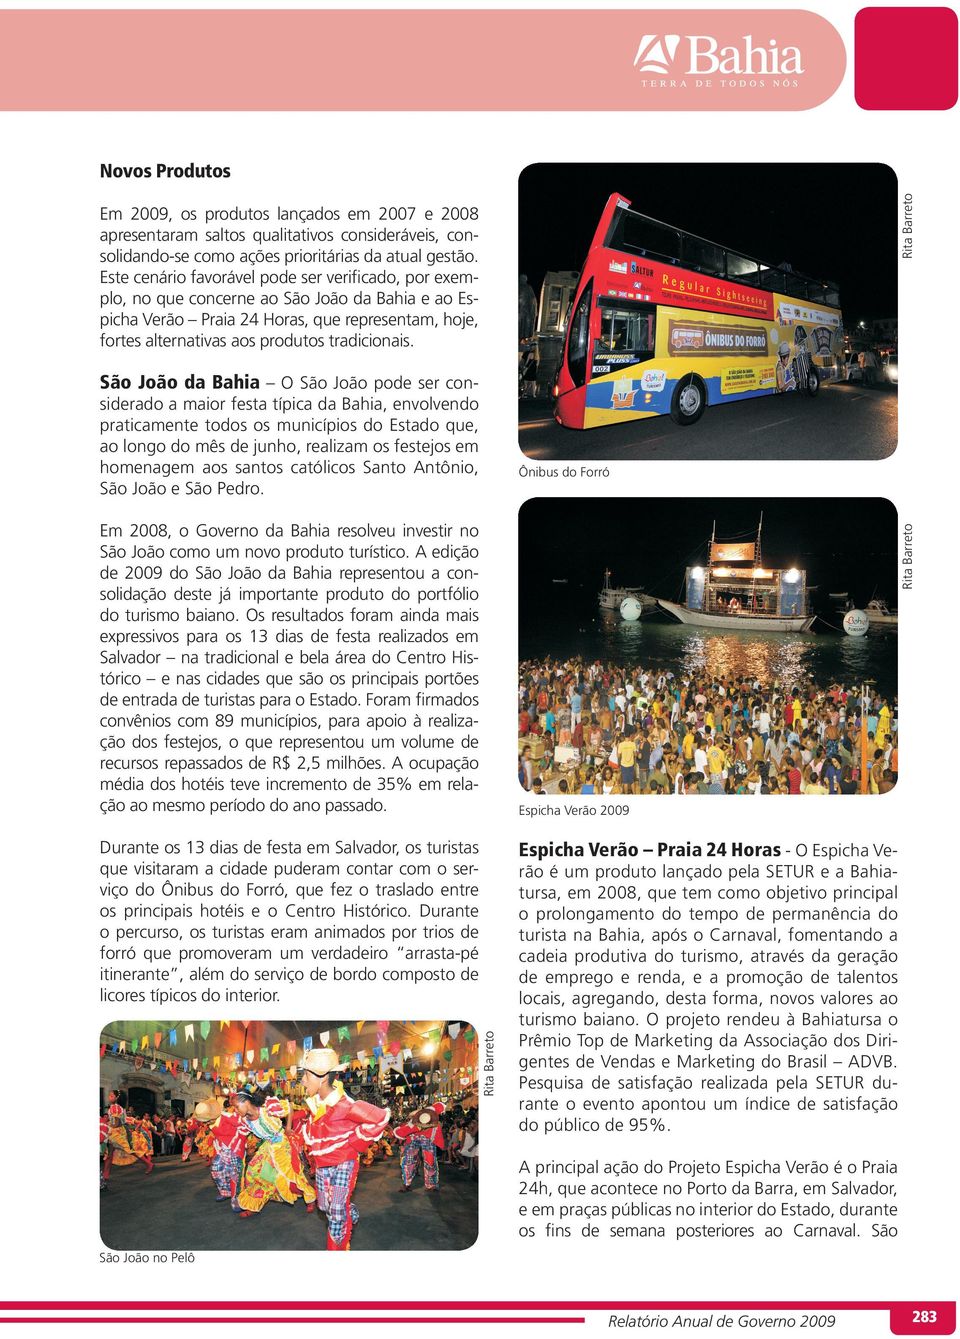 São João da Bahia O São João pode ser considerado a maior festa típica da Bahia, envolvendo praticamente todos os municípios do Estado que, ao longo do mês de junho, realizam os festejos em homenagem